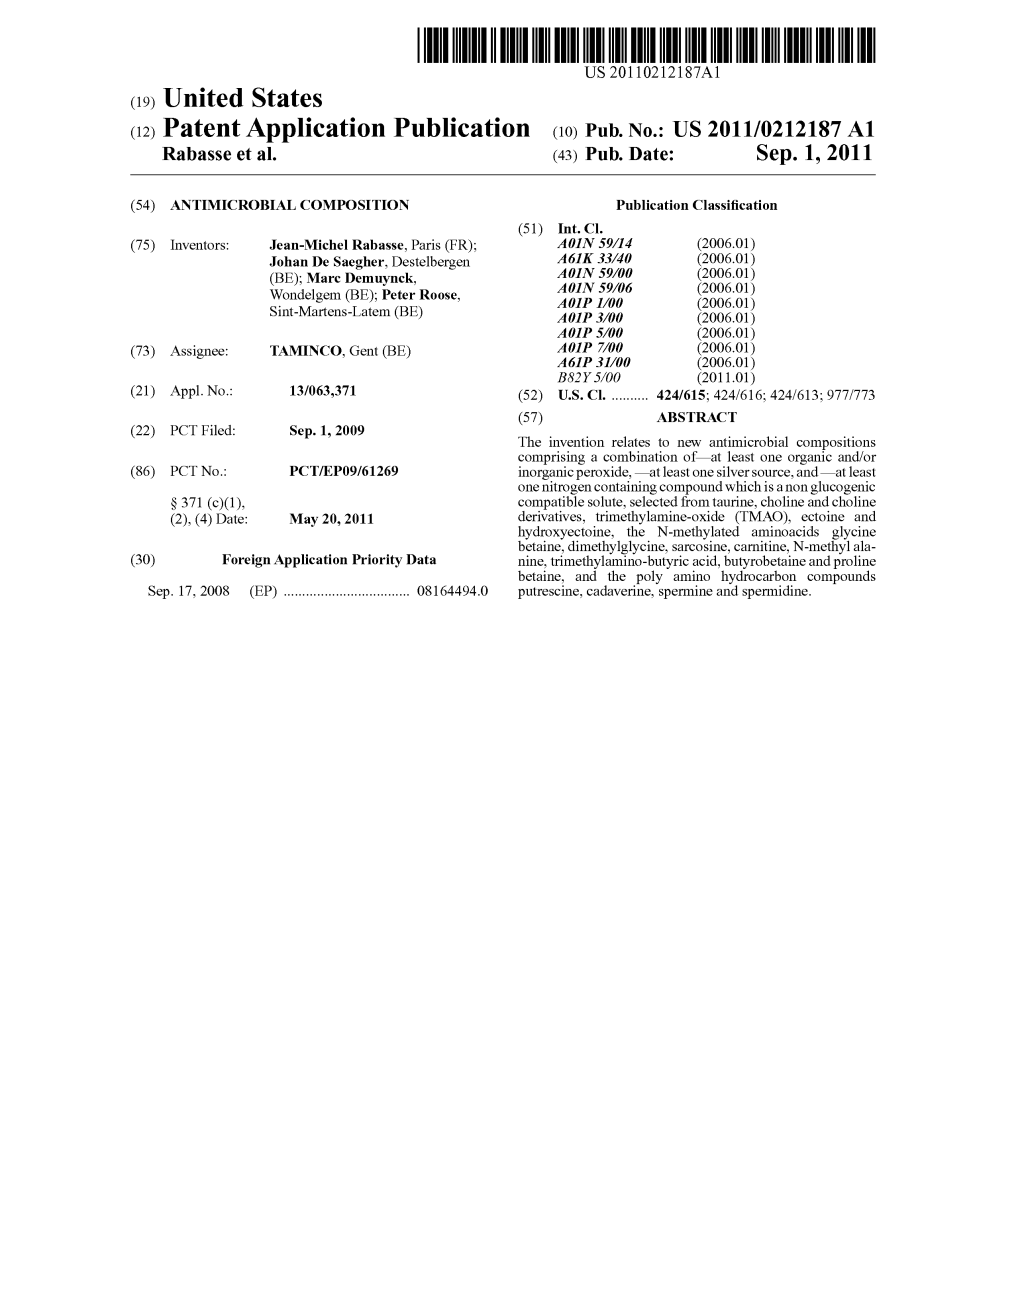 (12) Patent Application Publication (10) Pub. No.: US 2011/0212.187 A1 Rabasse Et Al